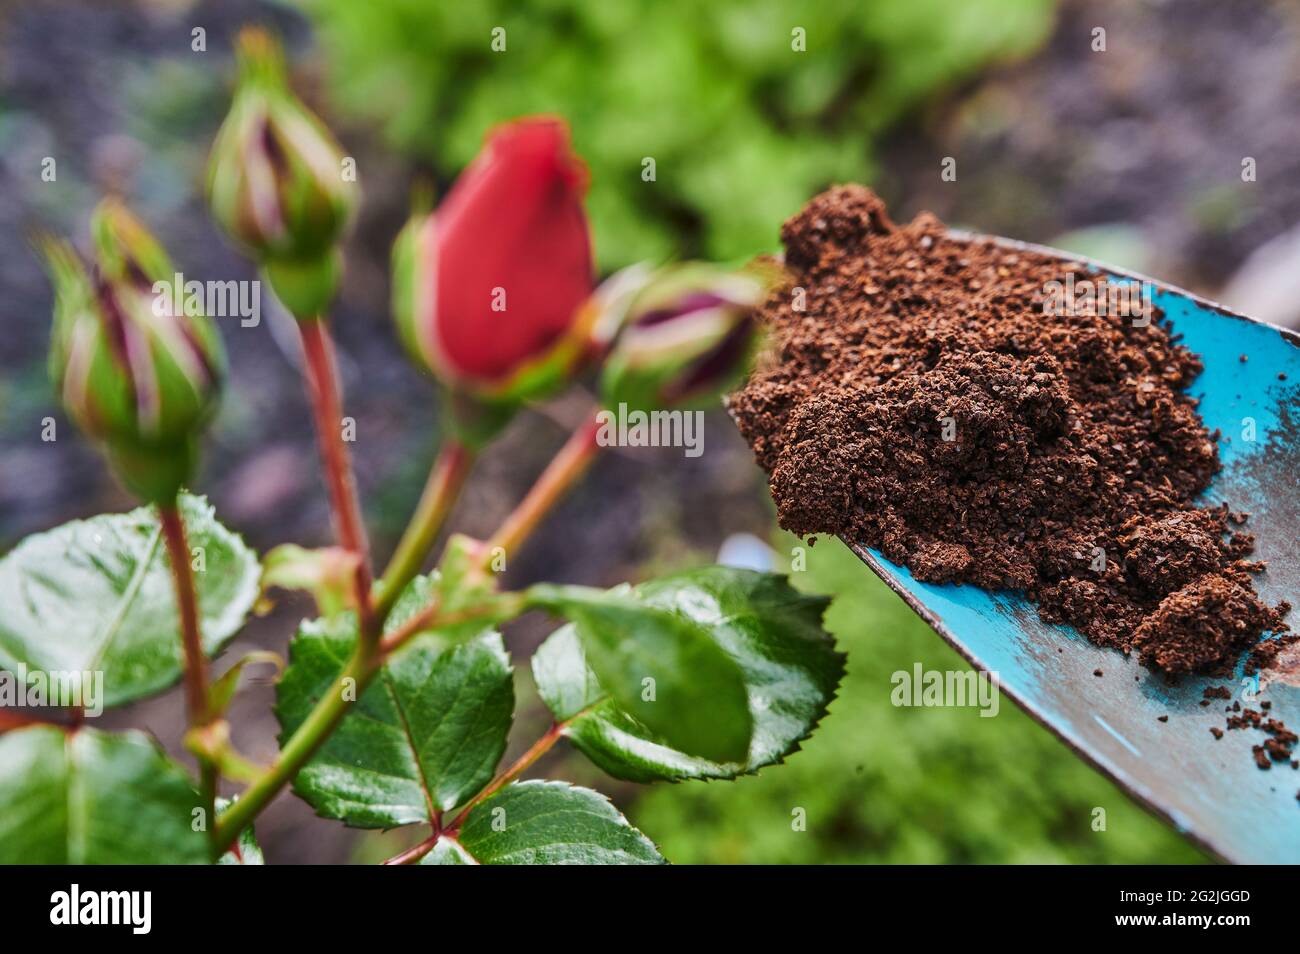 Gardening, fertilizing, rose bush, red roses, flowering, buds, blue garden shovel Stock Photo